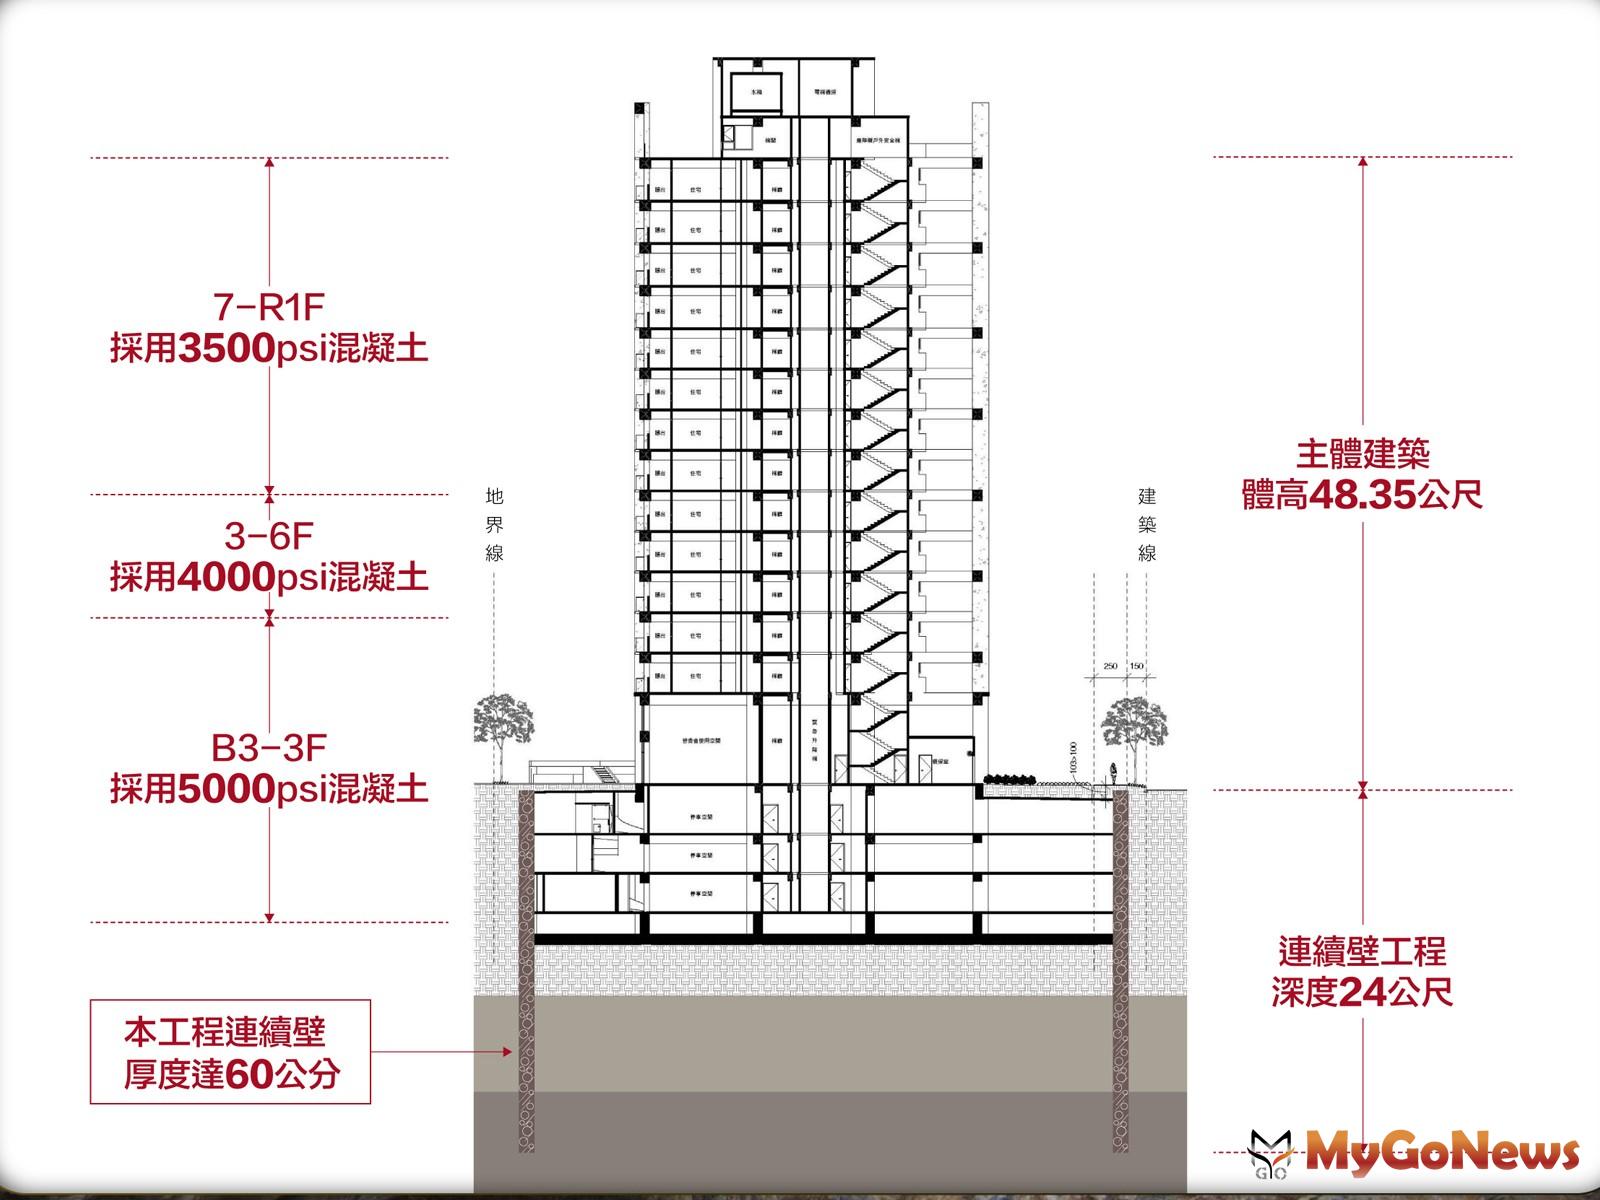 「春福安安」建案，因應台灣進入地震好發期，特別加強建築結構設計。圖為「春福安安」建築結構安全示意圖。 MyGoNews房地產新聞 市場快訊